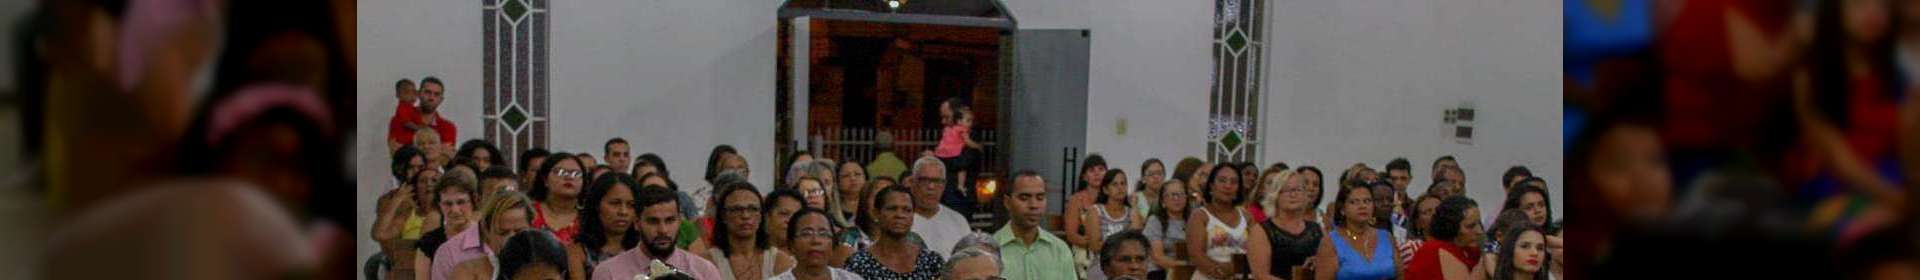 Igreja Cristã Maranata em Queimados (RJ) completa 46 anos